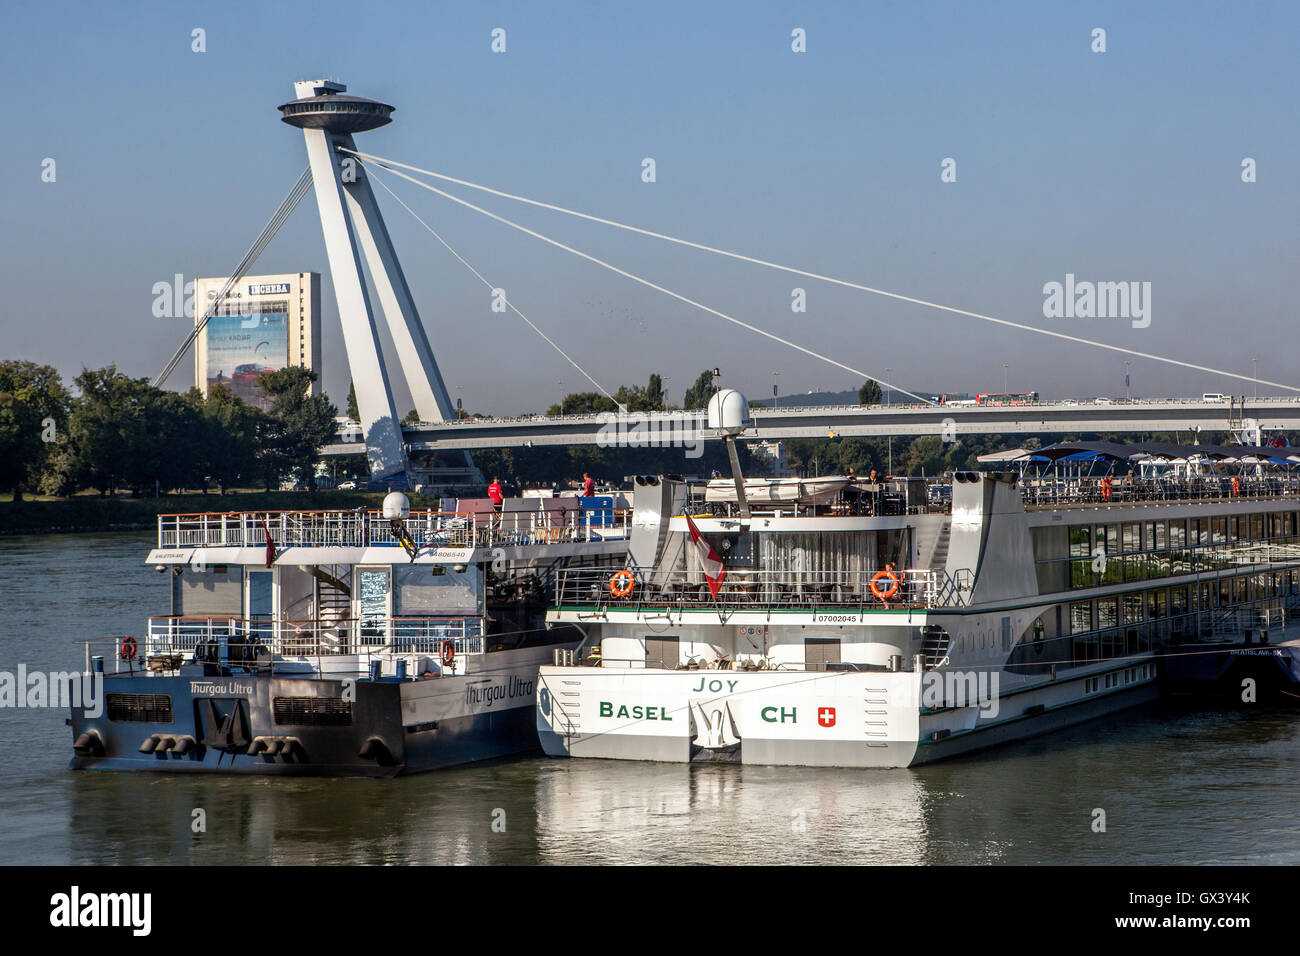 Pont du soulèvement national slovaque (SNP) avec restaurant OVNI, bateaux, Danube, Bratislava, Slovaquie, Europe Pont OVNI Bratislava Banque D'Images